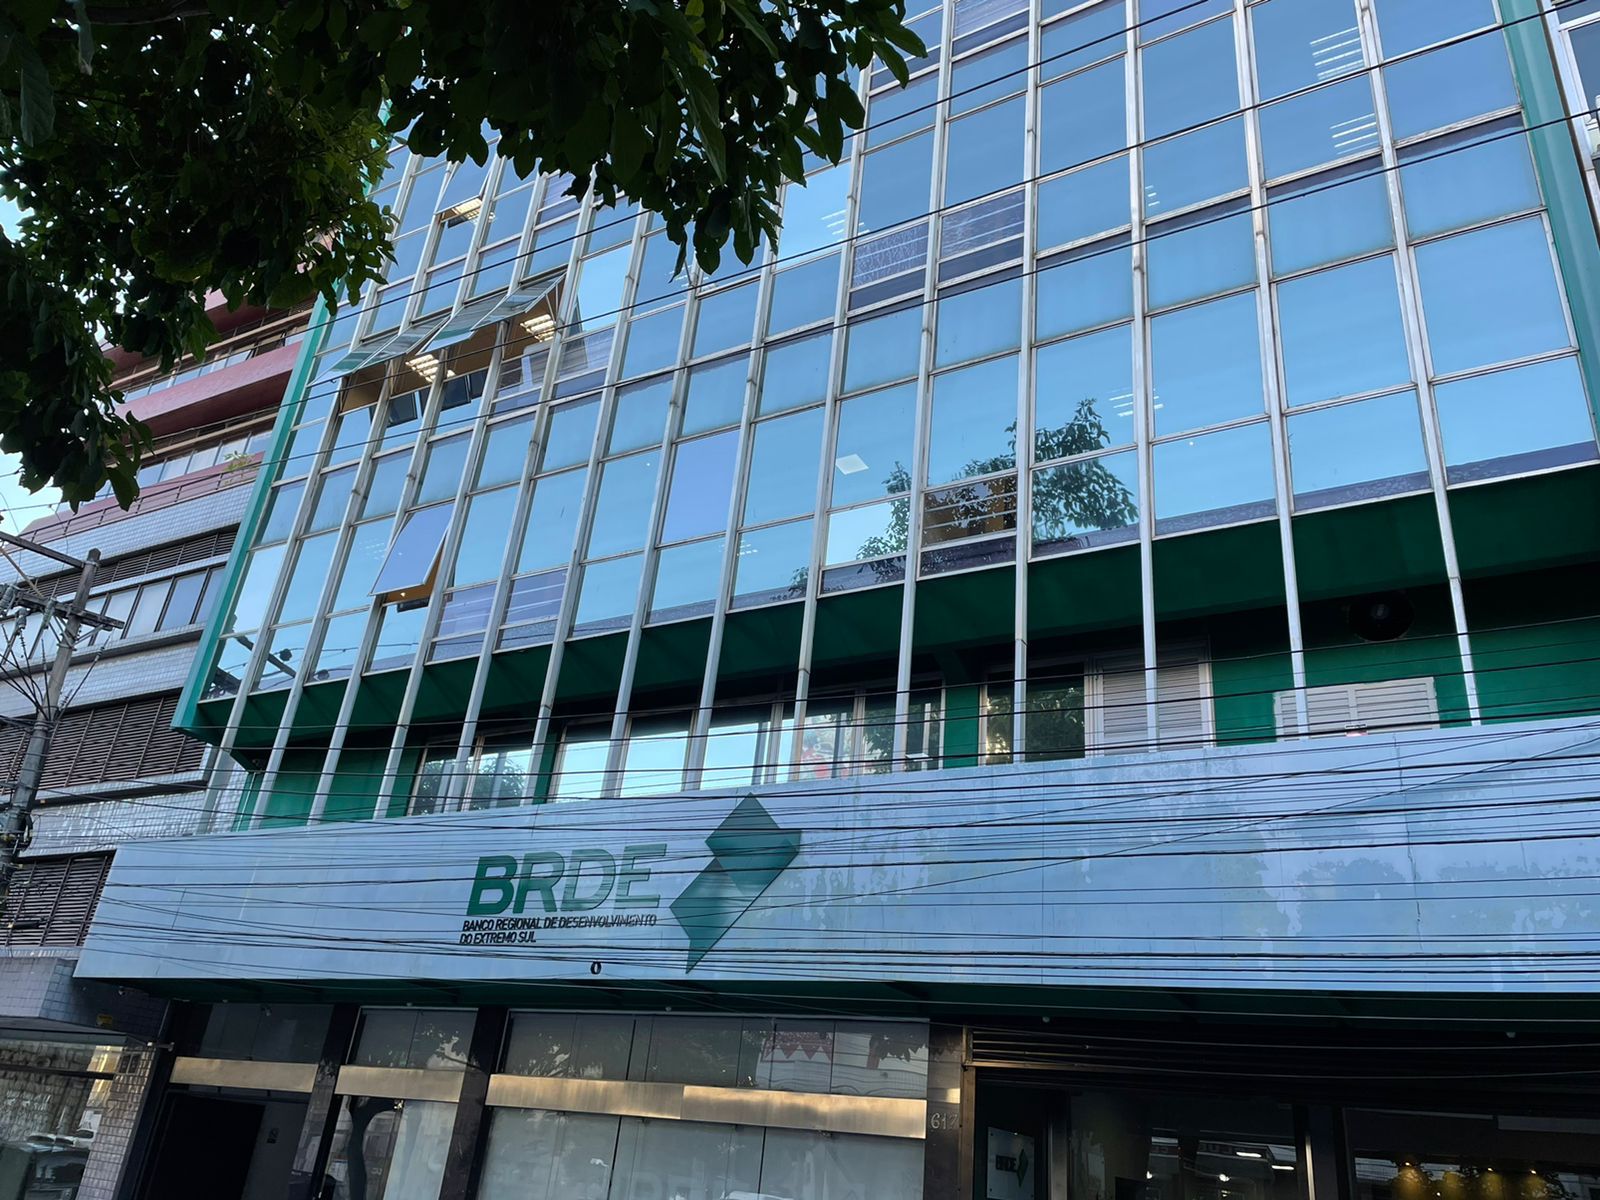 O banco que impulsiona negócios agora com nova sede em Blumenau - Economia  SC